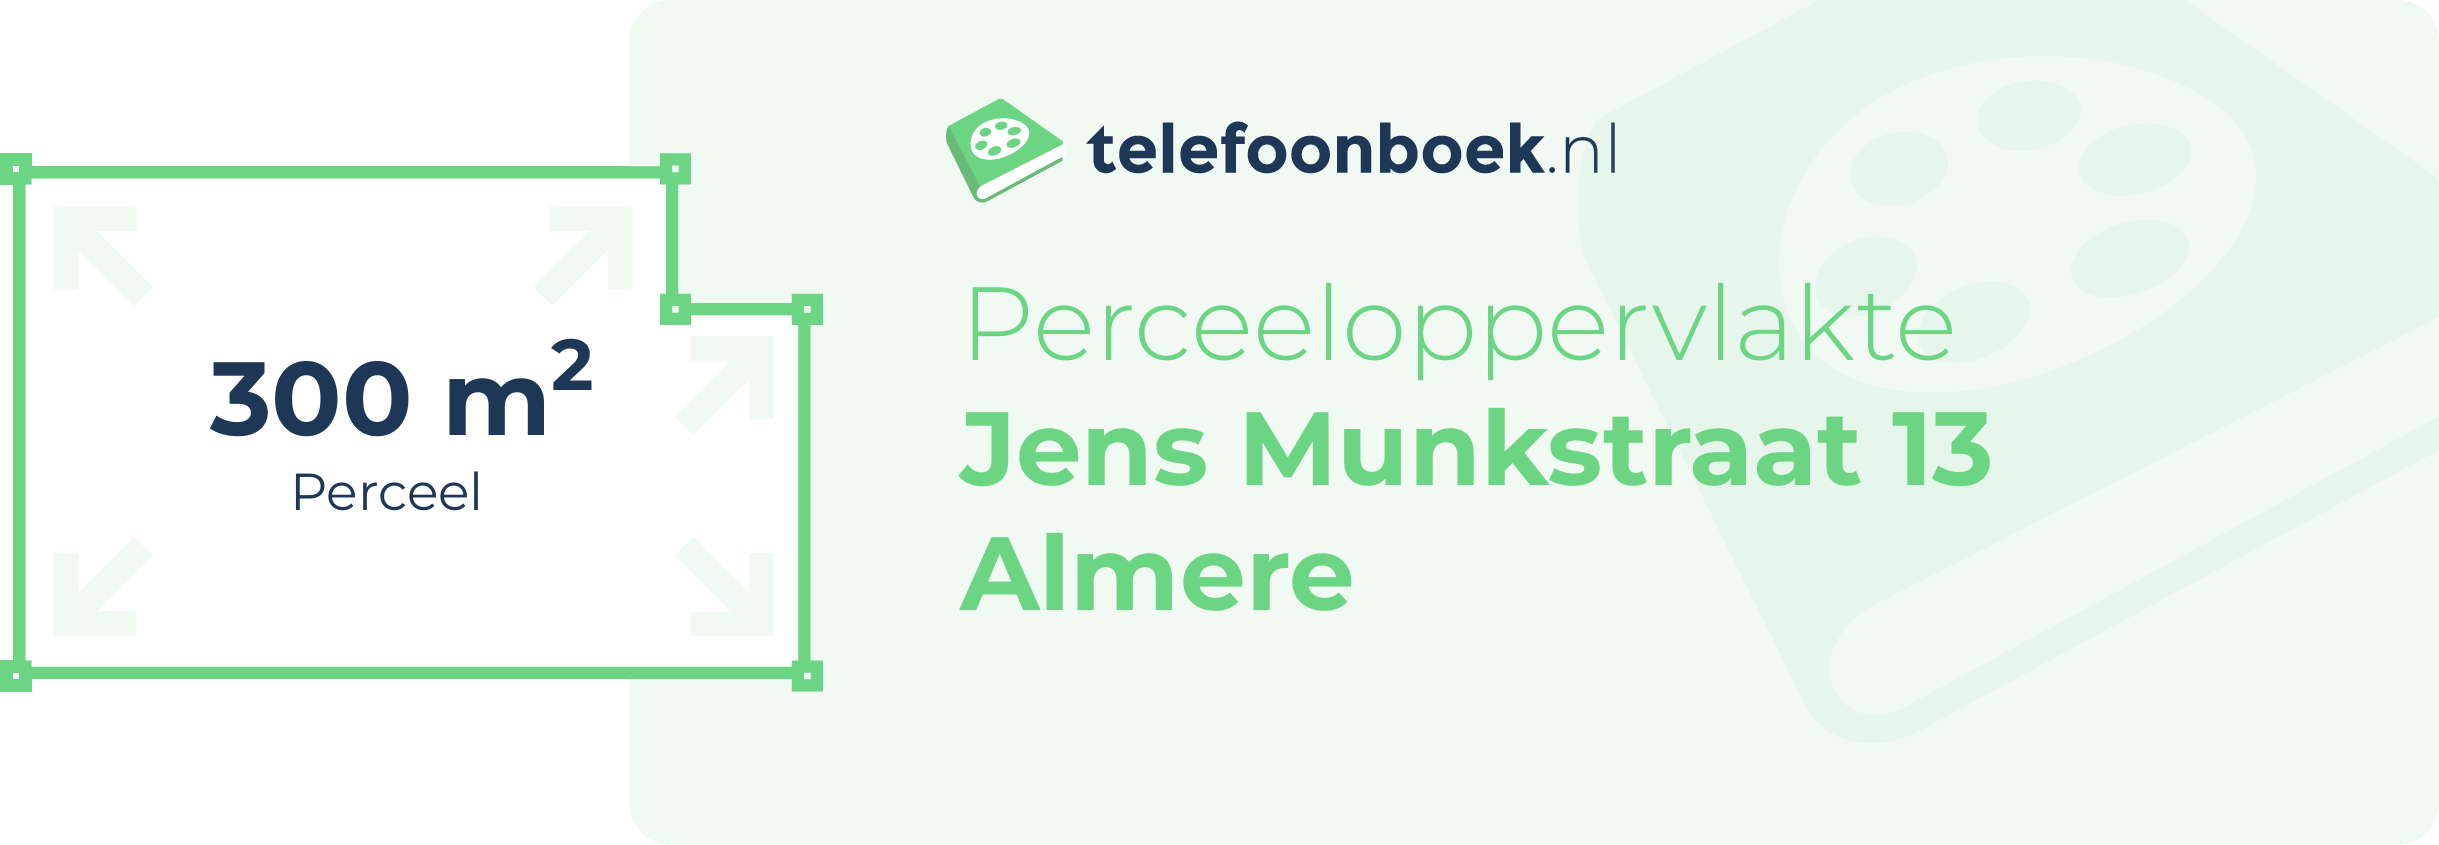 Perceeloppervlakte Jens Munkstraat 13 Almere